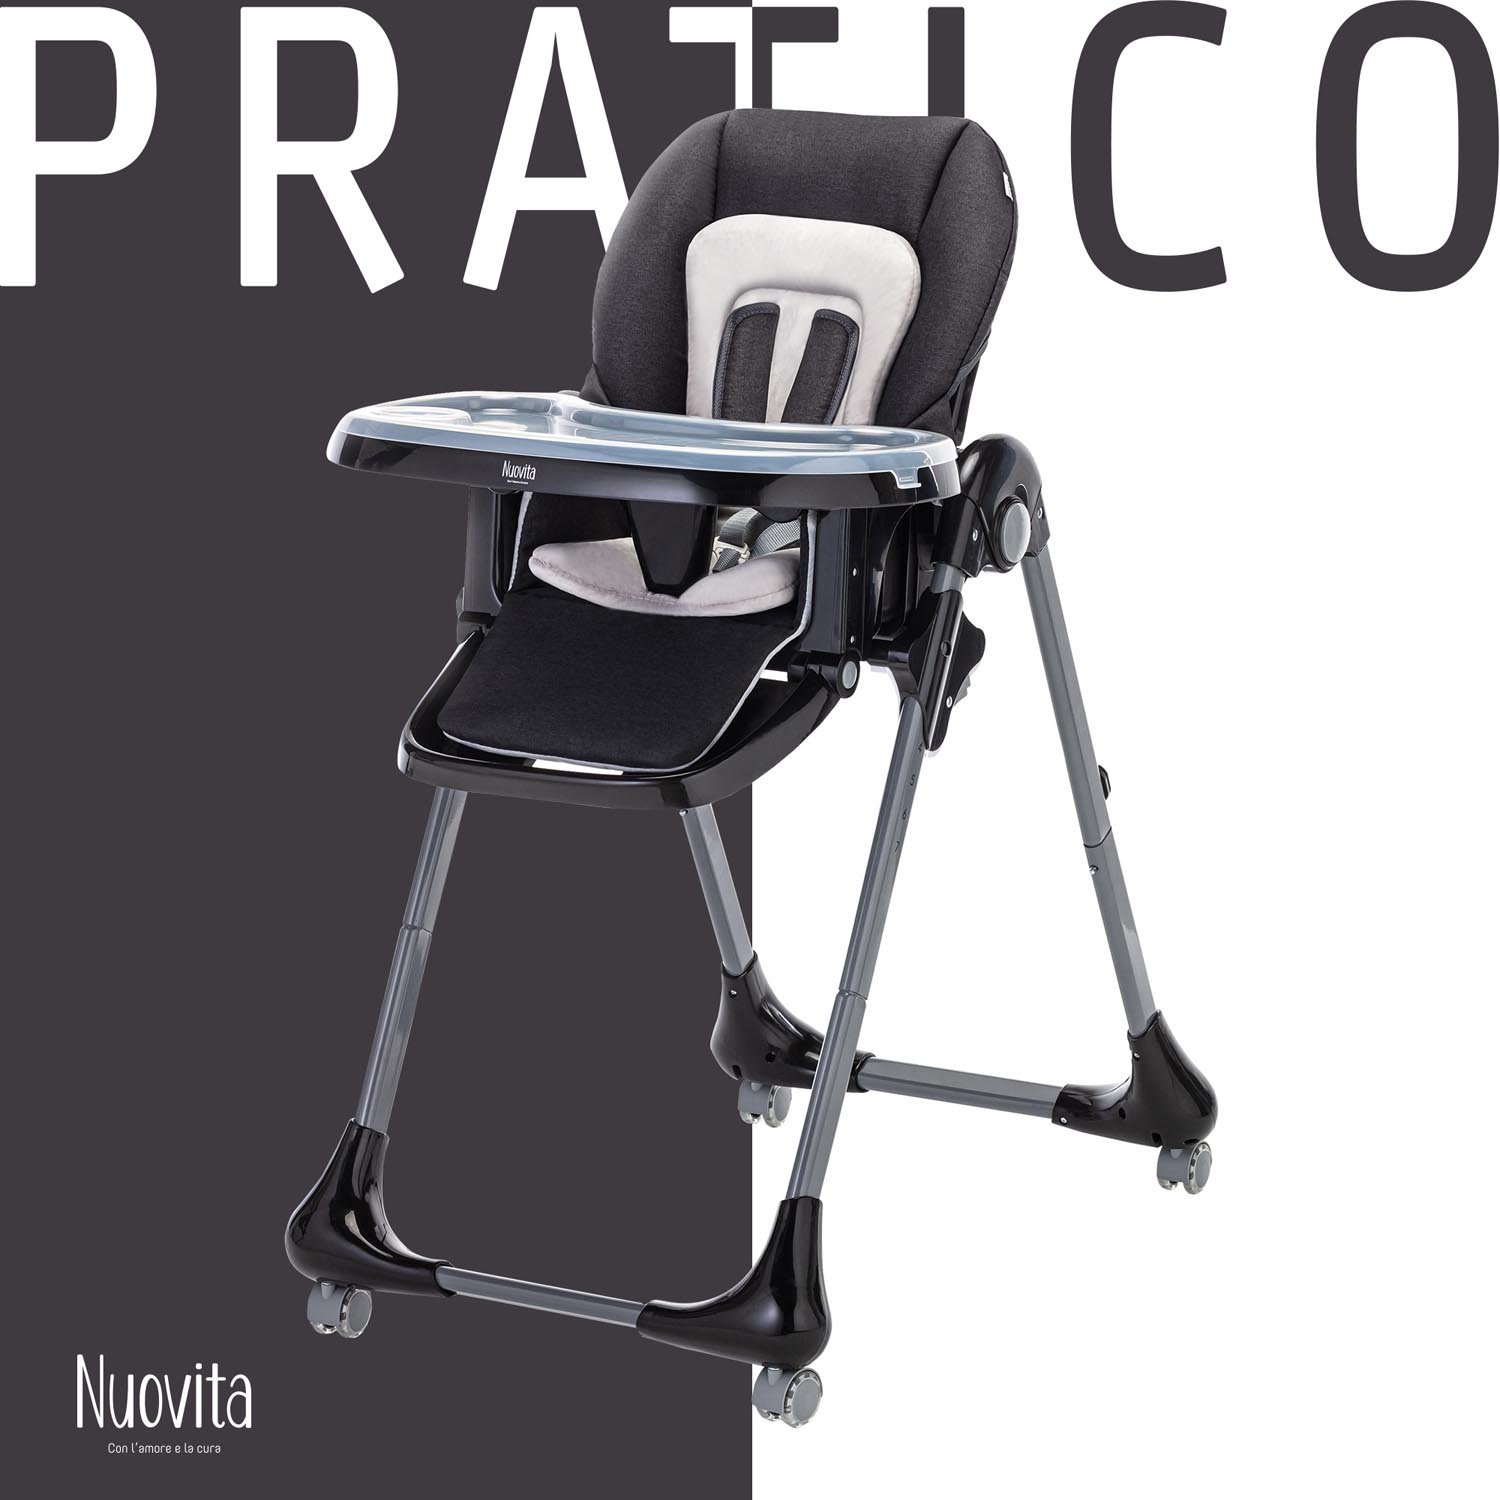 Стульчик для кормления Nuovita Pratico  (Grigio scuro, grigio/Темно-серый, Серый) стульчик для кормления nuovita futuro senso bianco grigio scuro темно серый